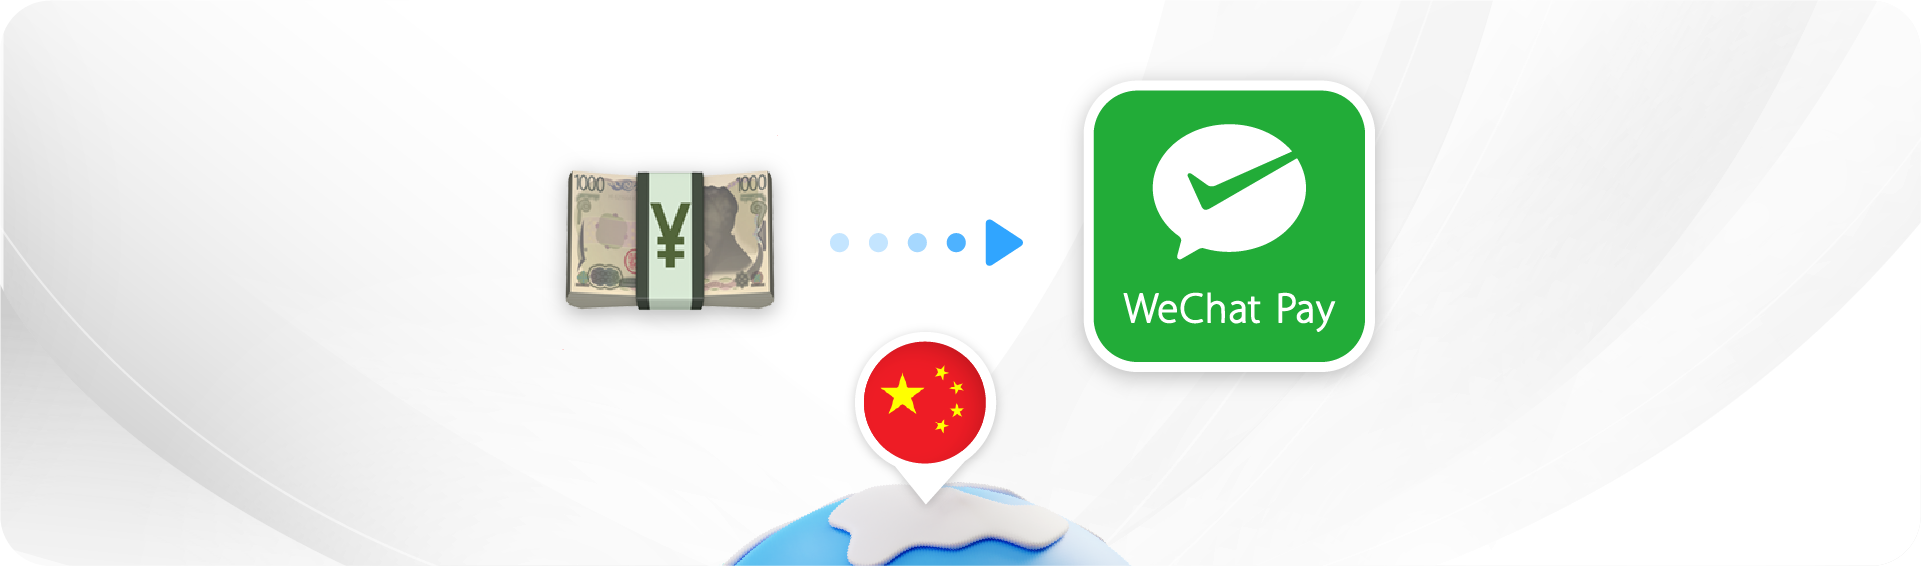 Kirim uang ke WeChat Pay